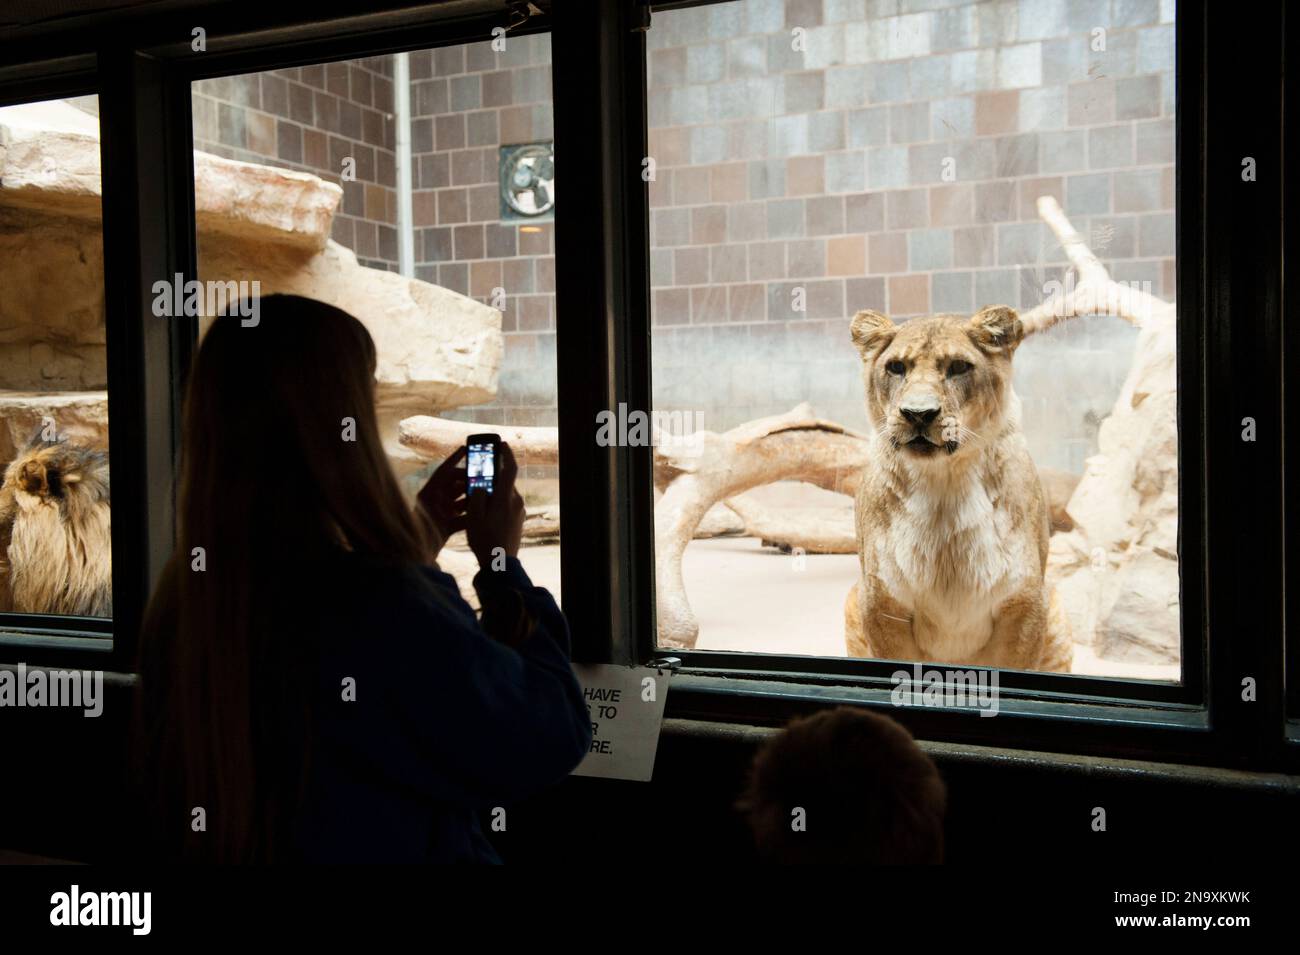 Une adolescente utilise son téléphone portable pour photographier une femme lion d'Afrique (Panthera Leo) ; Omaha, Nebraska, États-Unis d'Amérique Banque D'Images